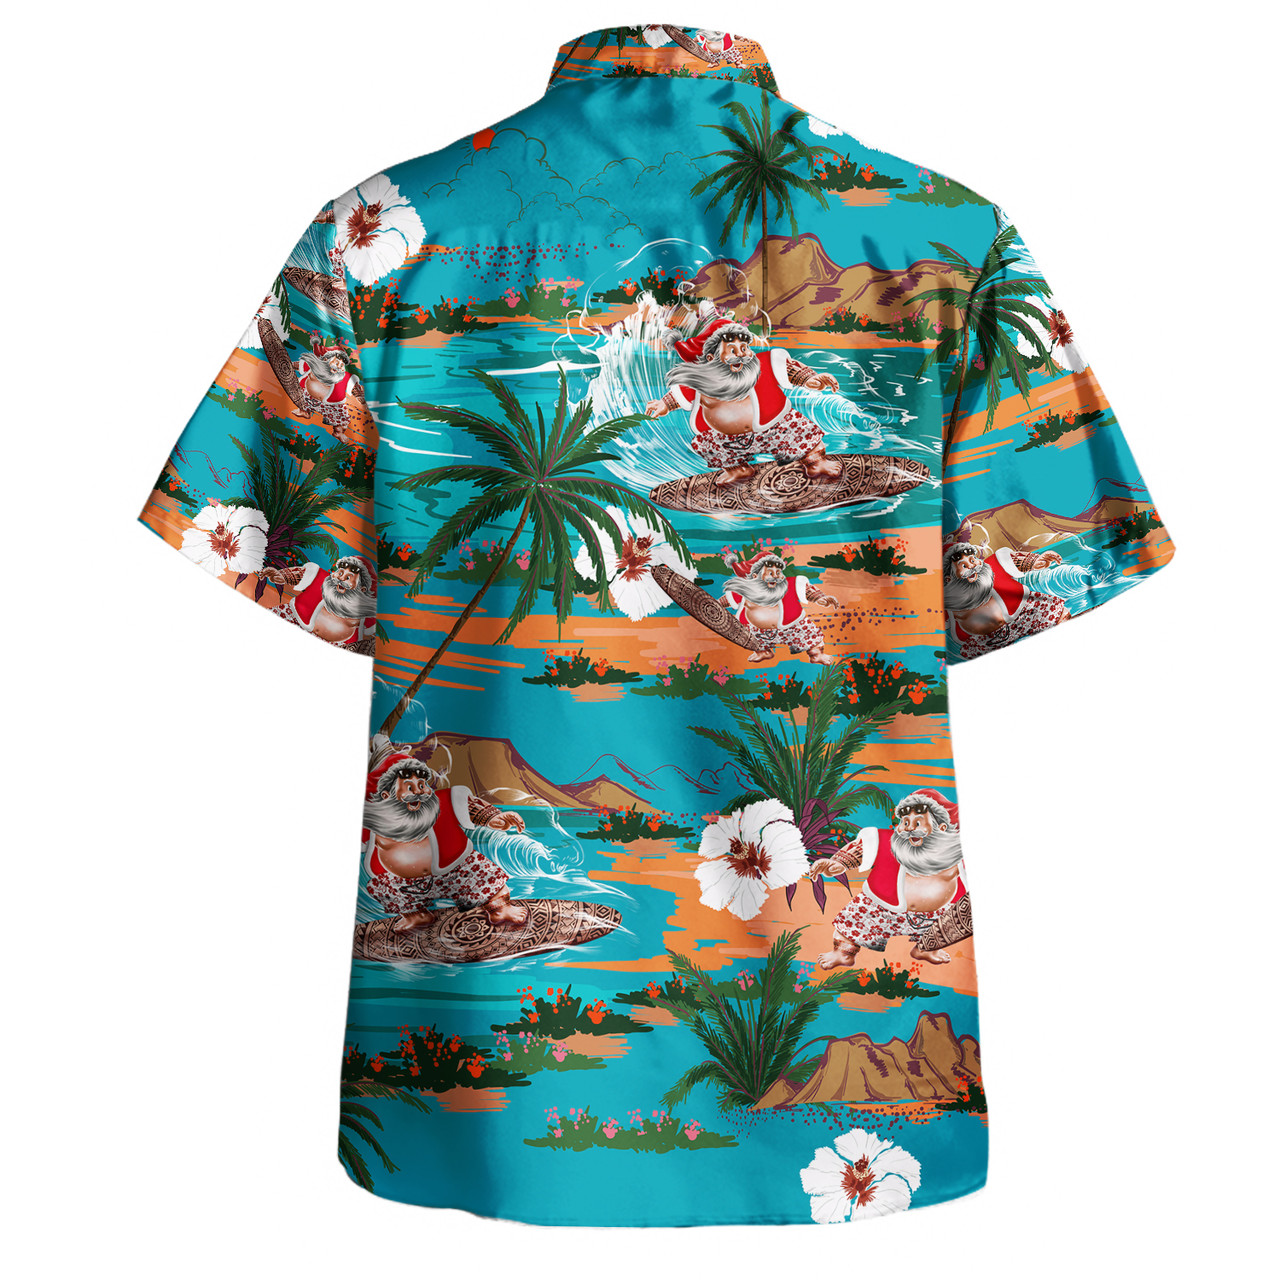 Santa Claus Surf Aloha Short Sleeve Shirt Retro Blue